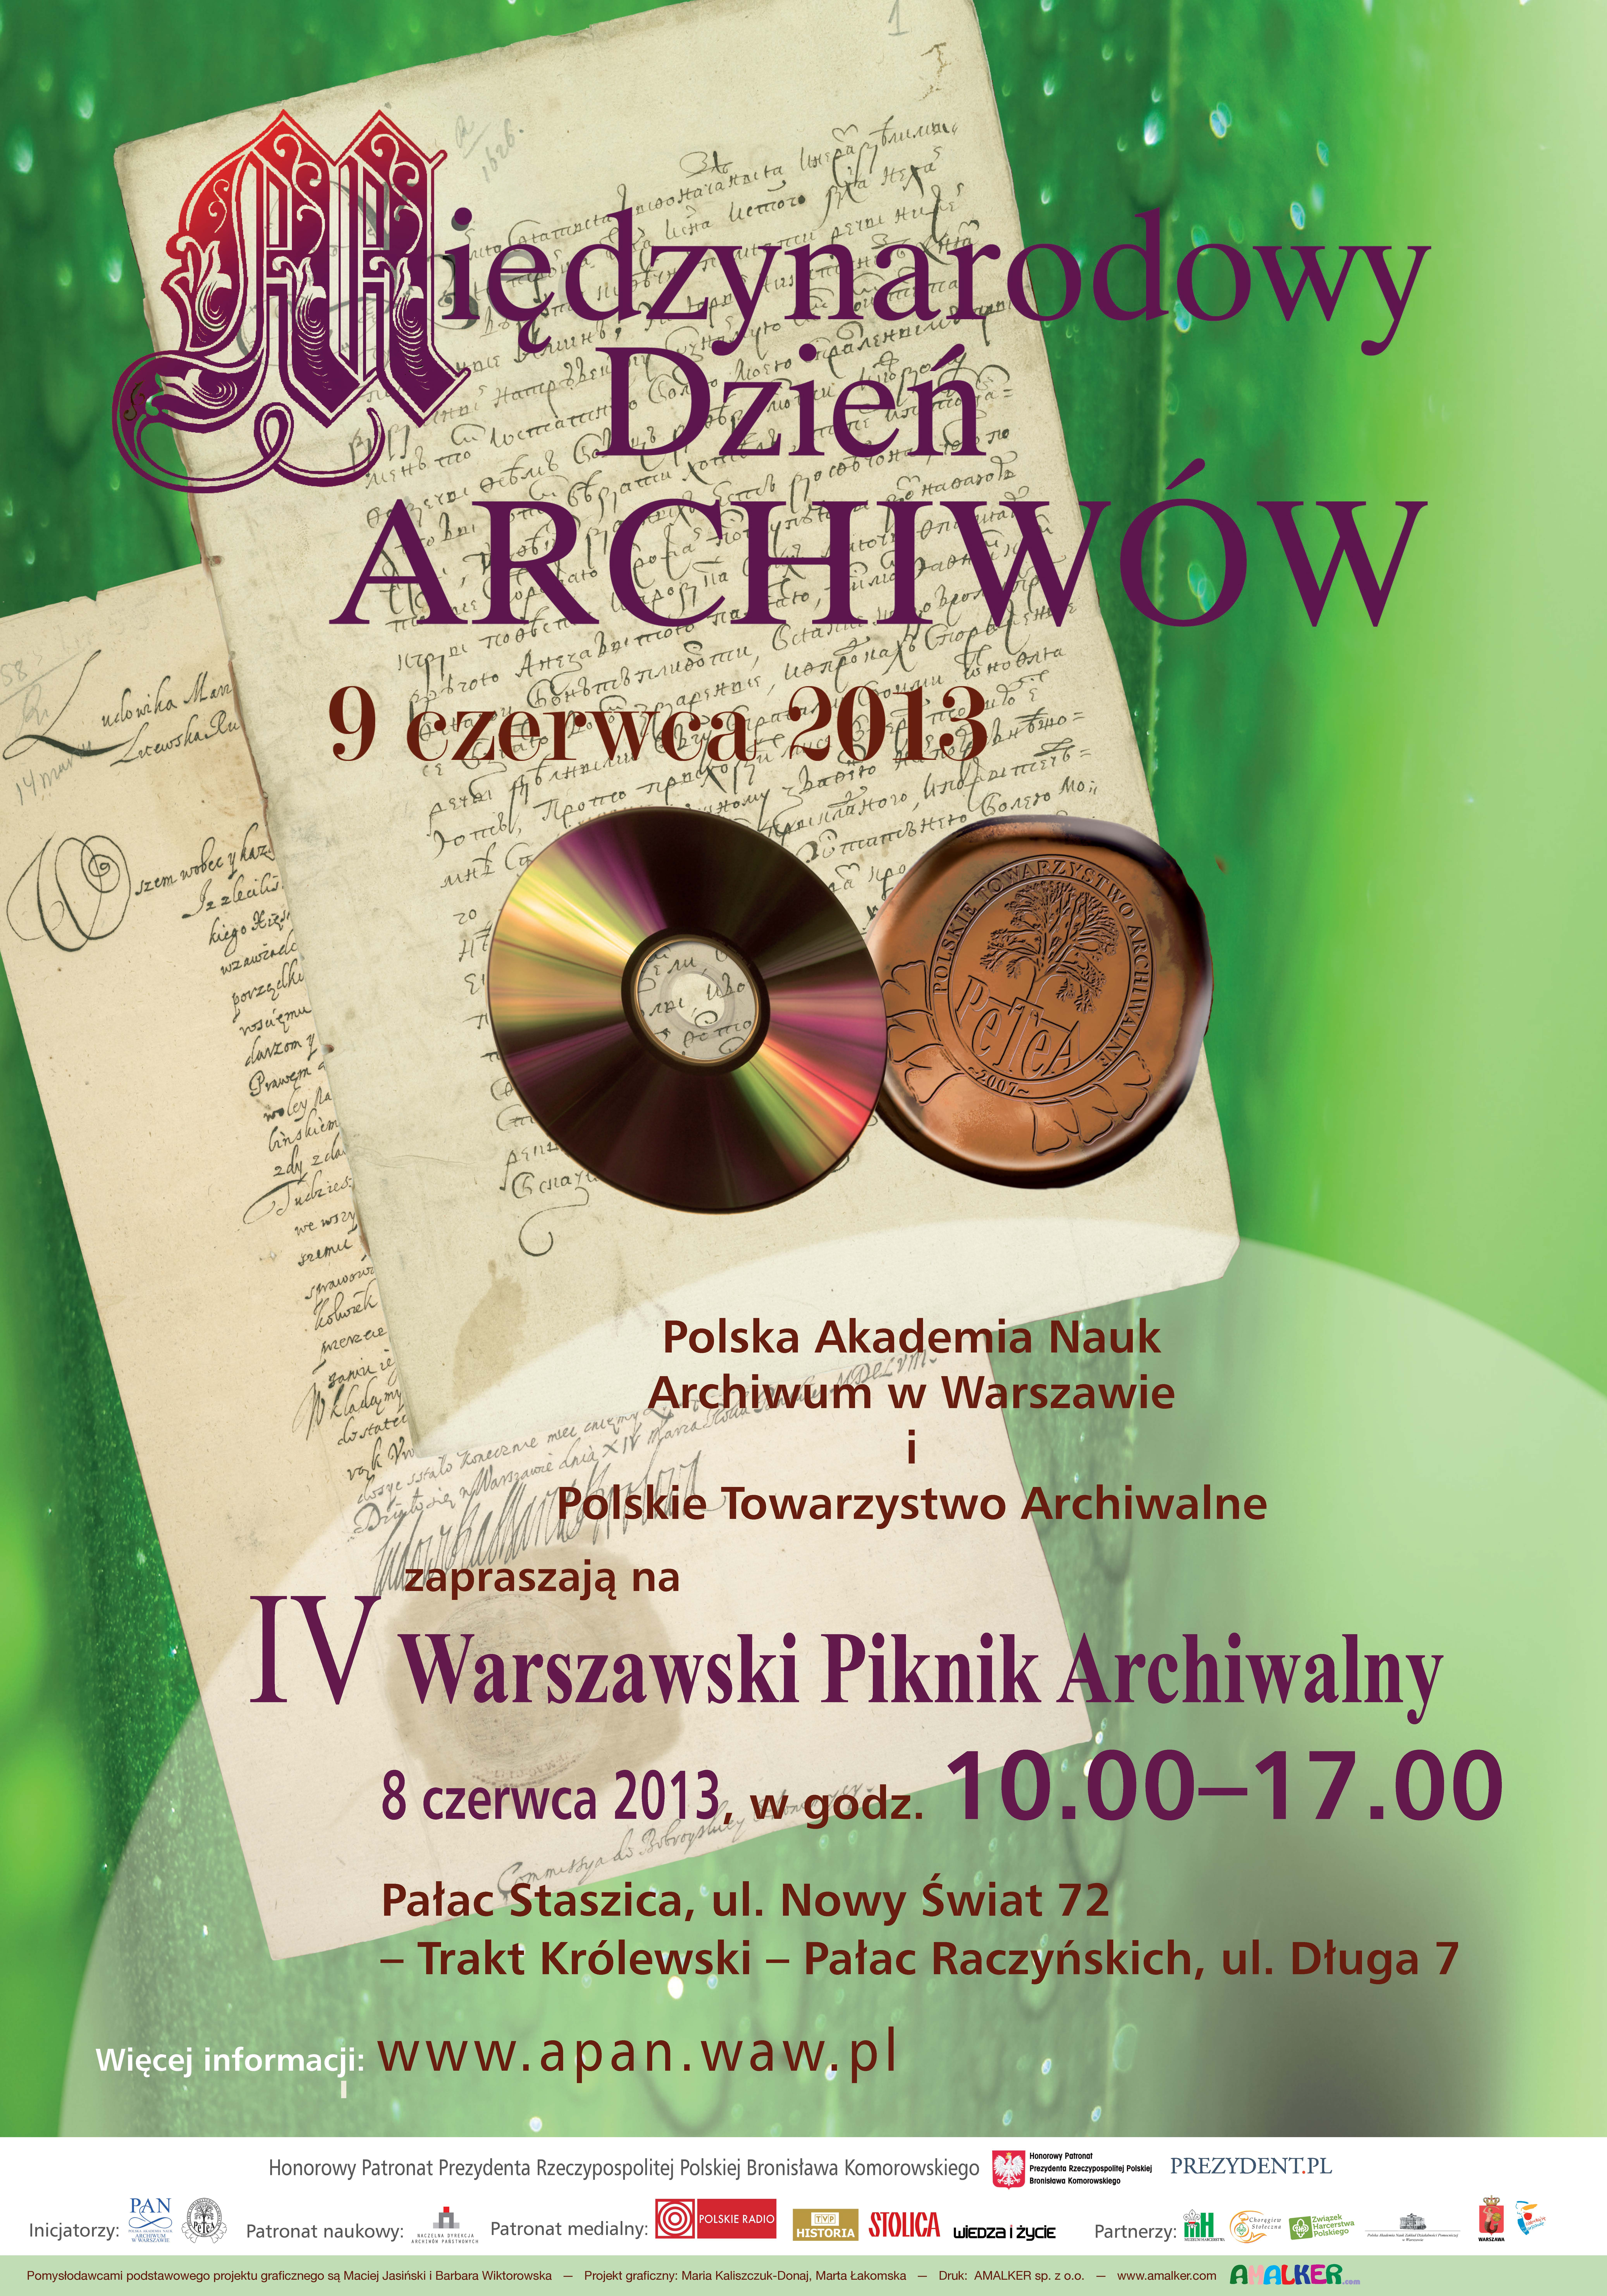 4 Warszawski Piknik Archiwalny – 8 czerwca 10.00-17.00